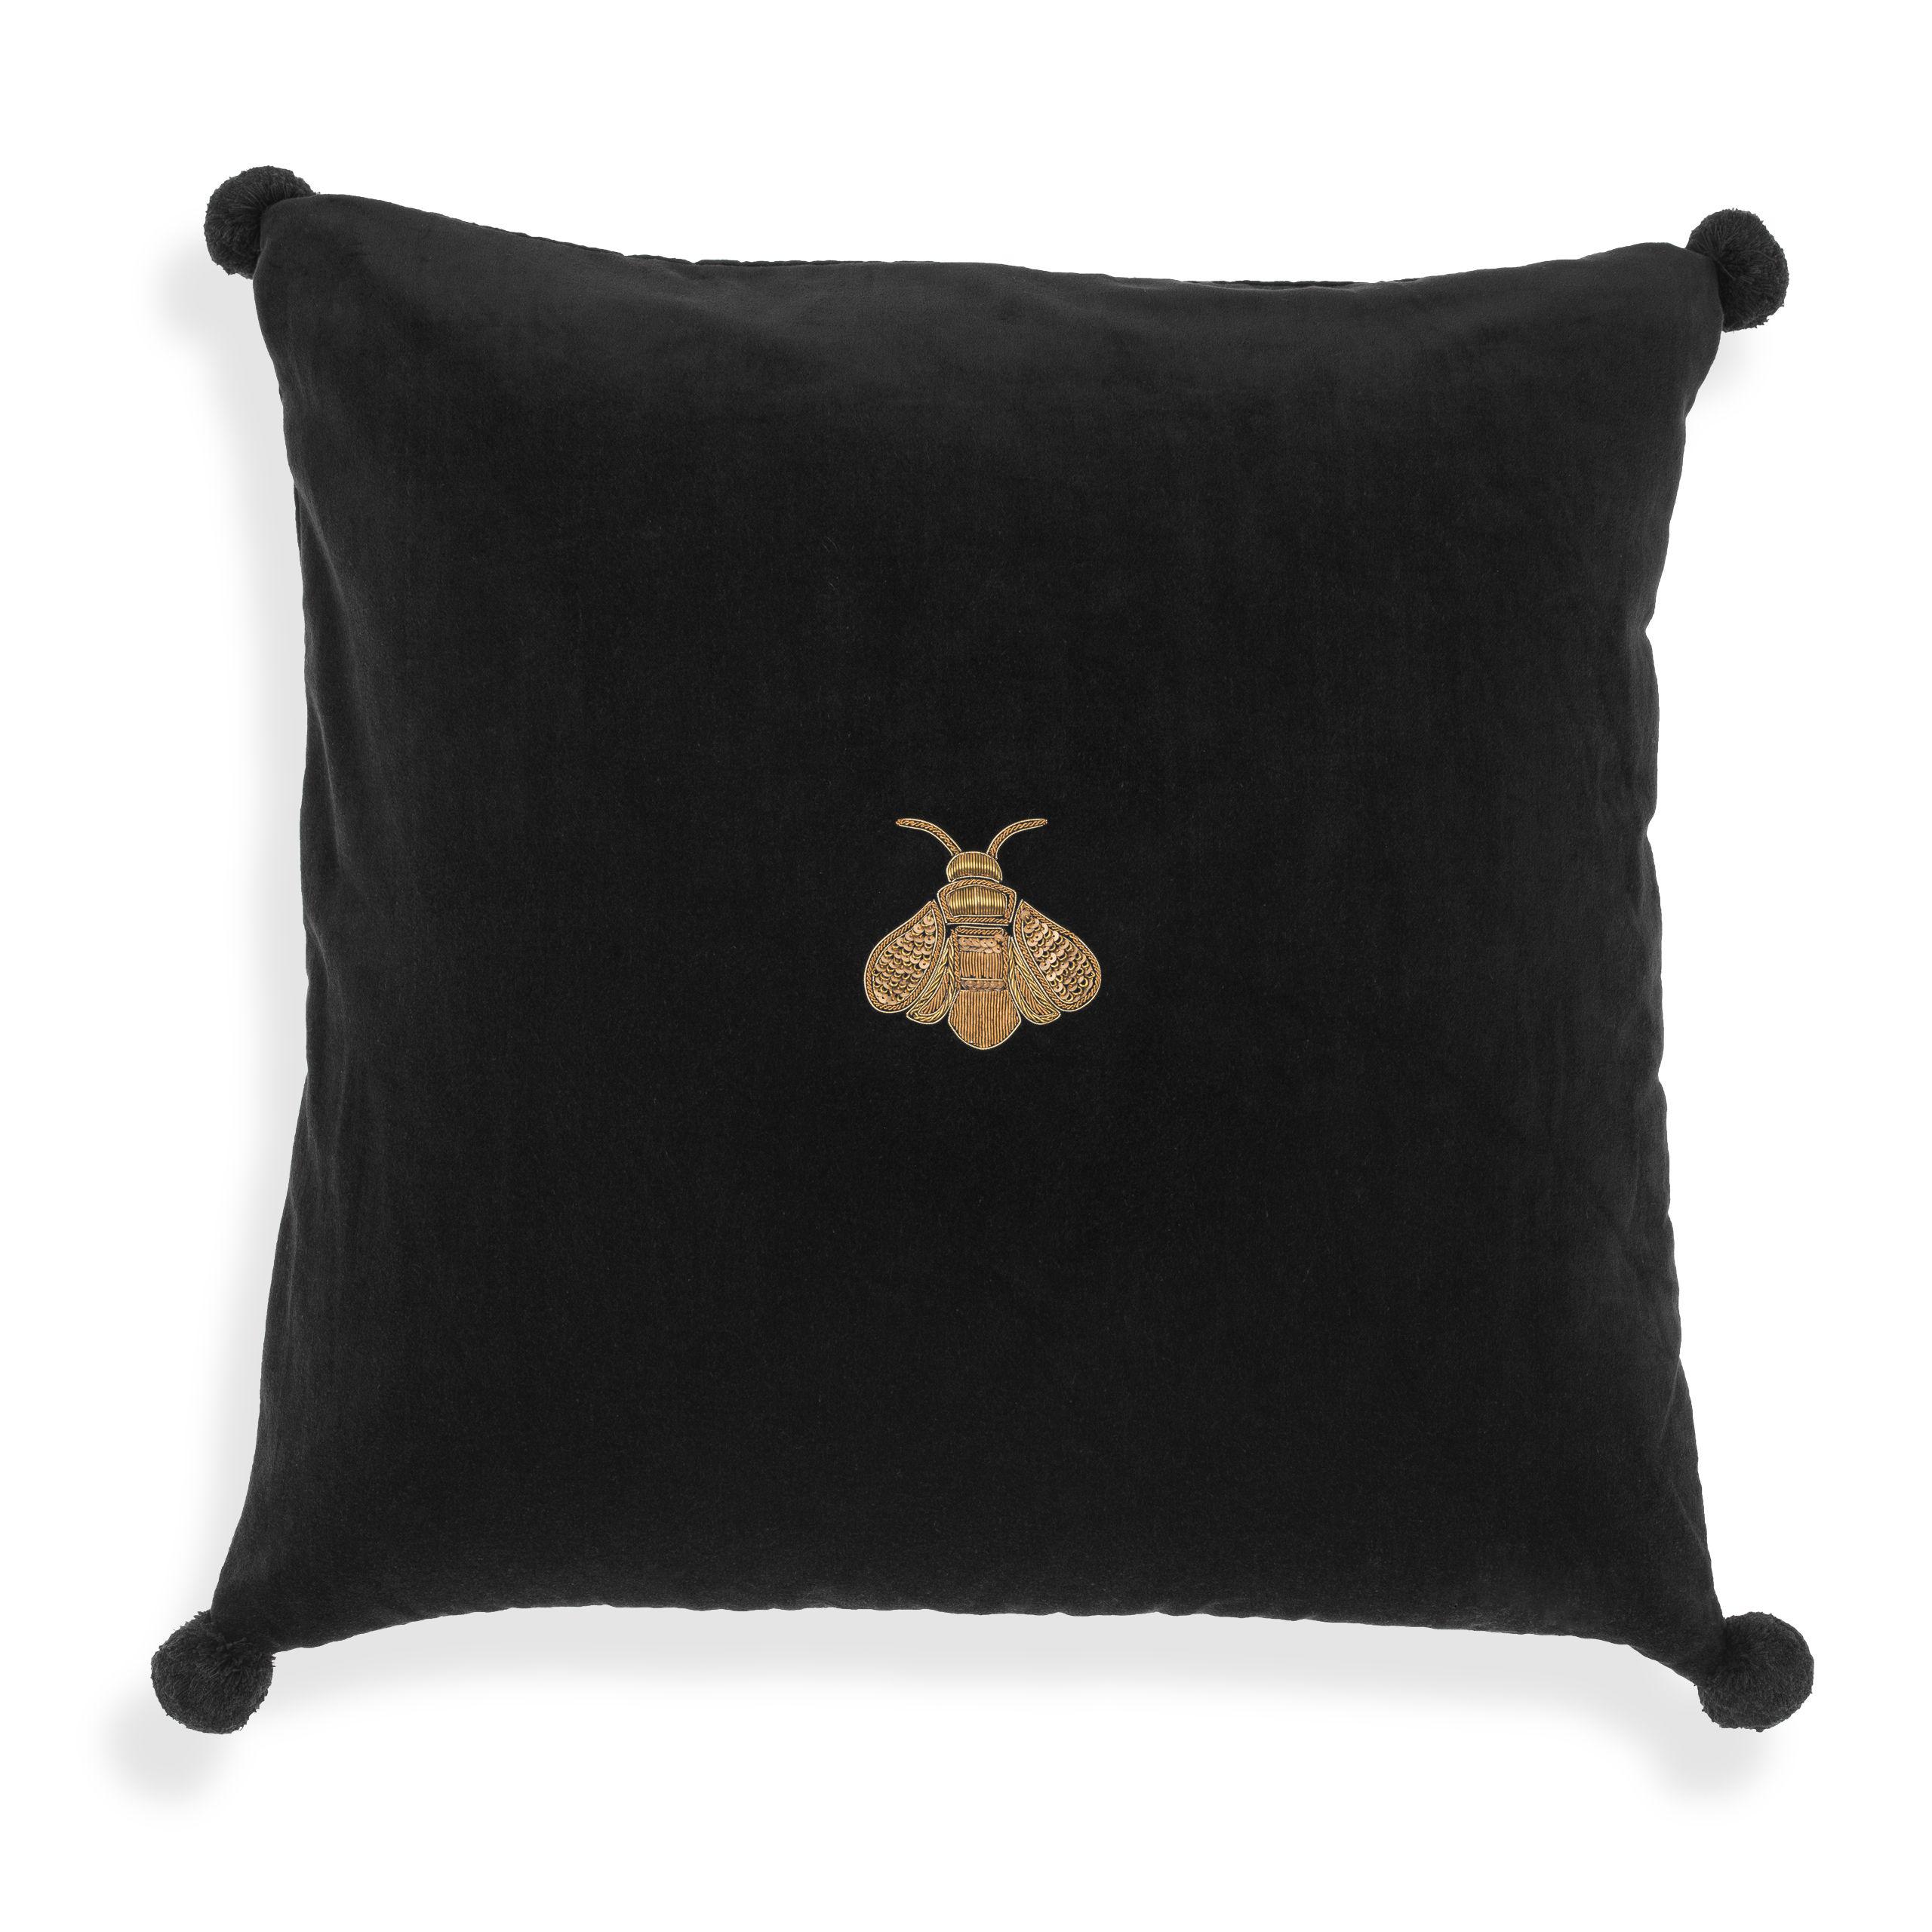 Купить Декоративная подушка Cushion Lacombe в интернет-магазине roooms.ru